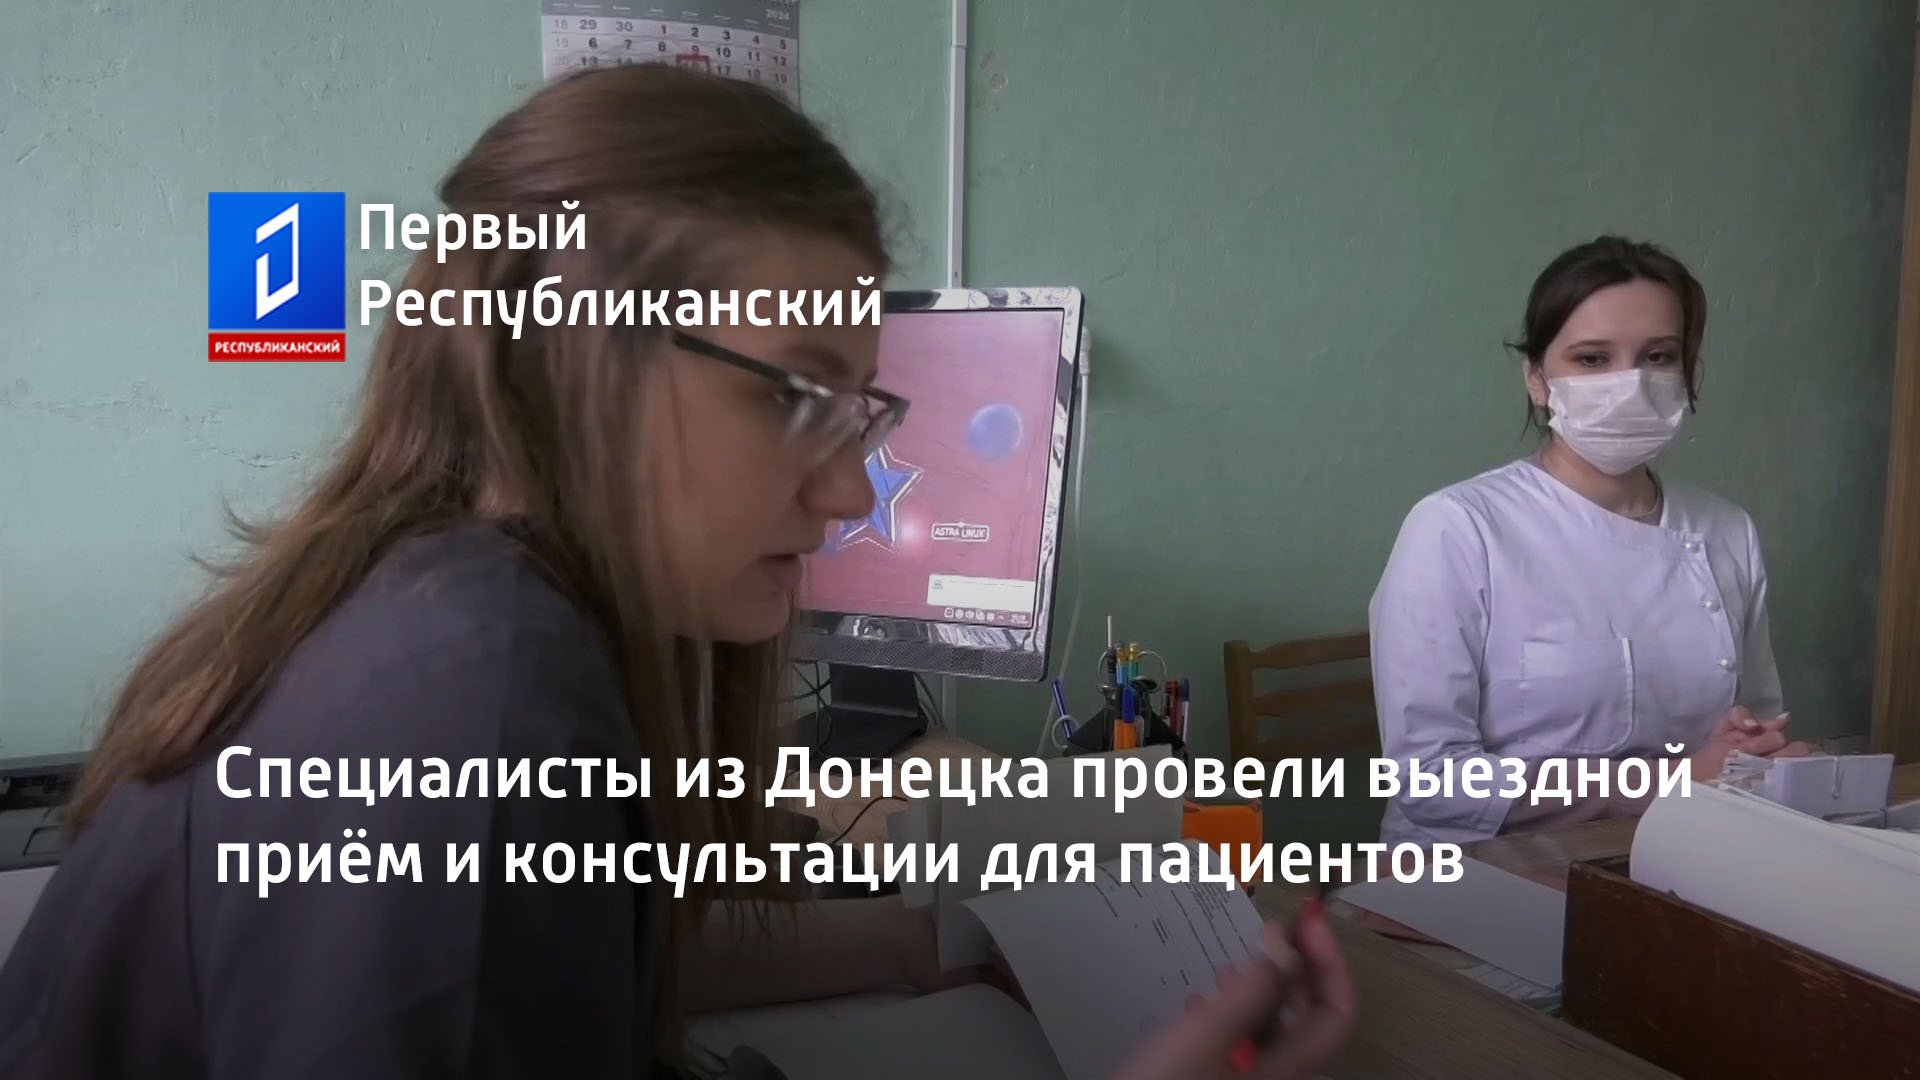 Специалисты из Донецка провели выездной приём и консультации для пациентов